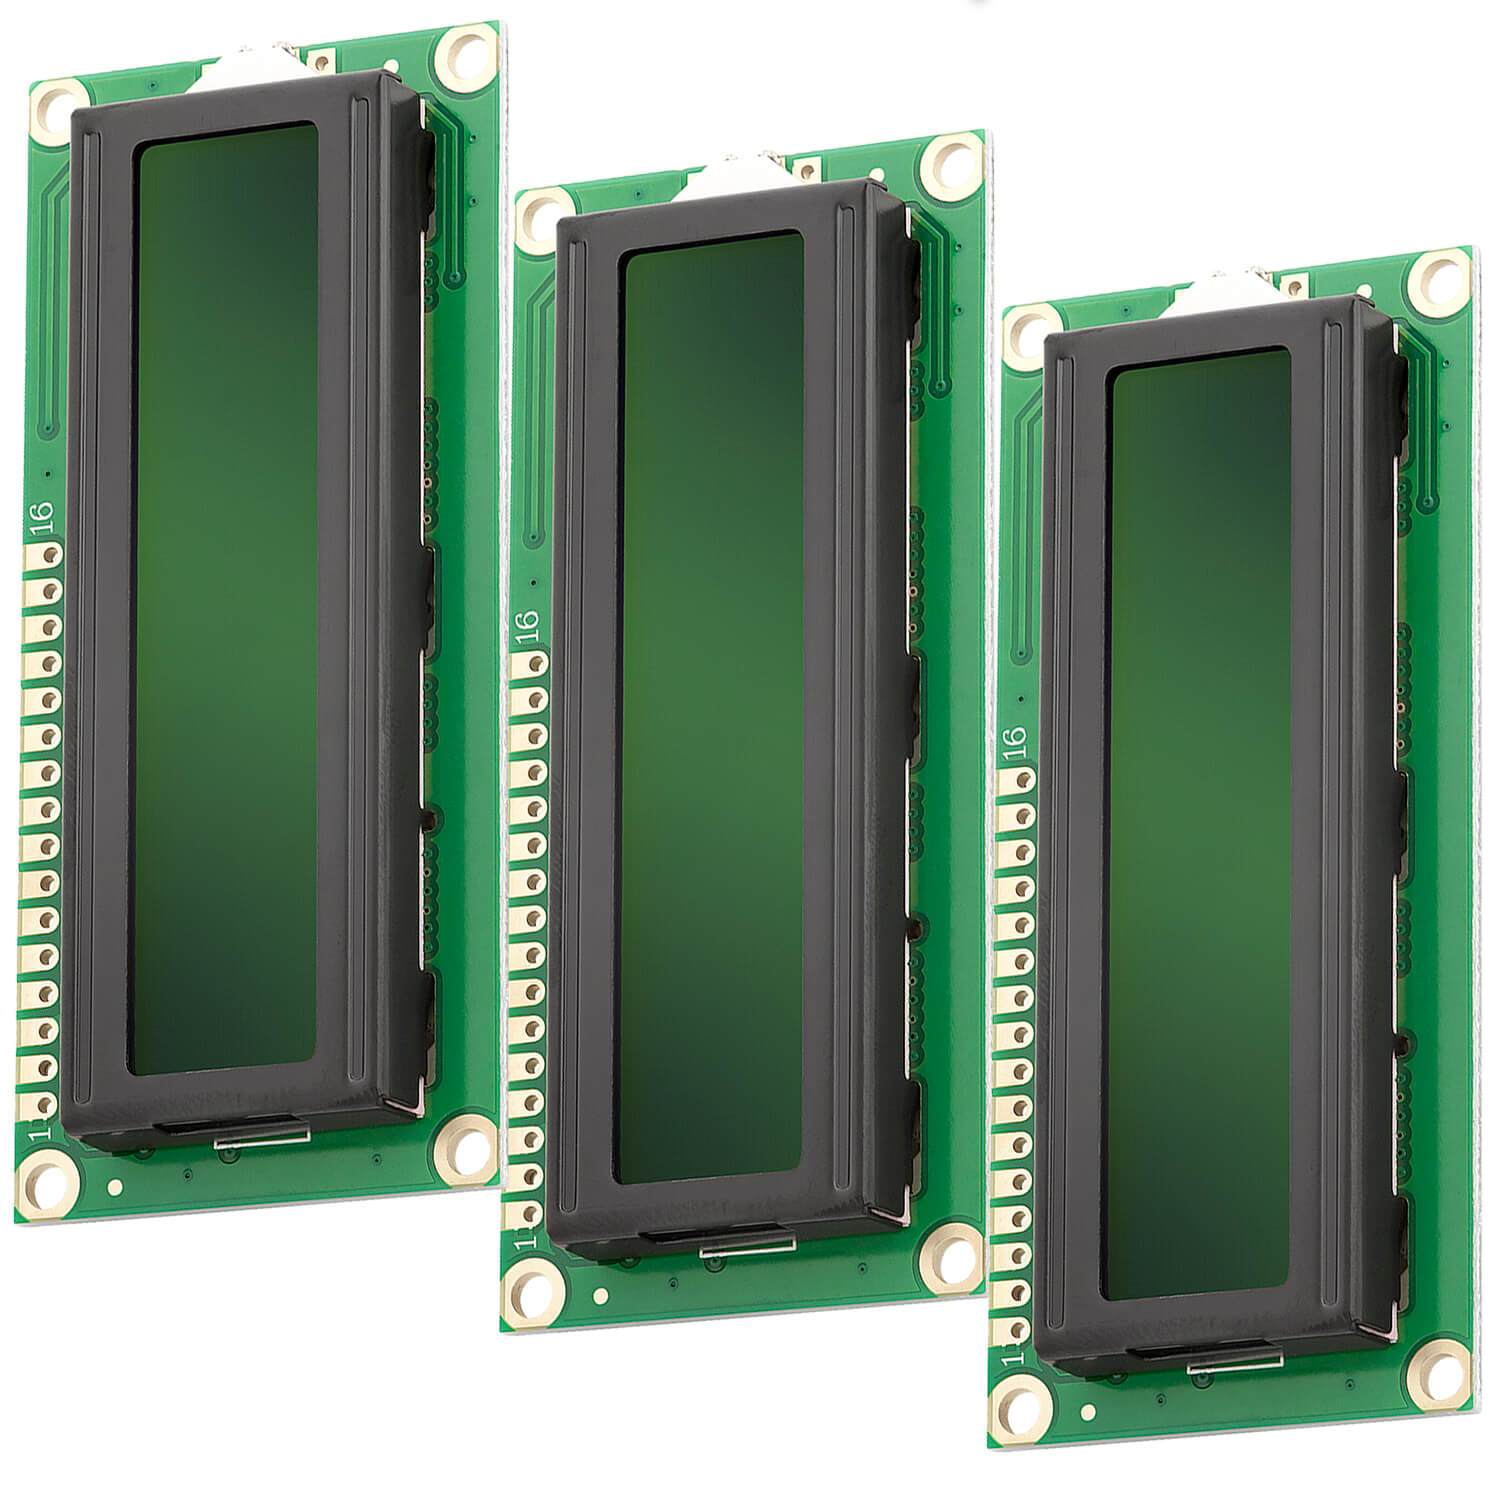 HD44780 1602 LCD Modul Display 2x16 Zeichen (mit grünem Hintergrund) kompatibel mit Arduino und Raspberry Pi - AZ-Delivery